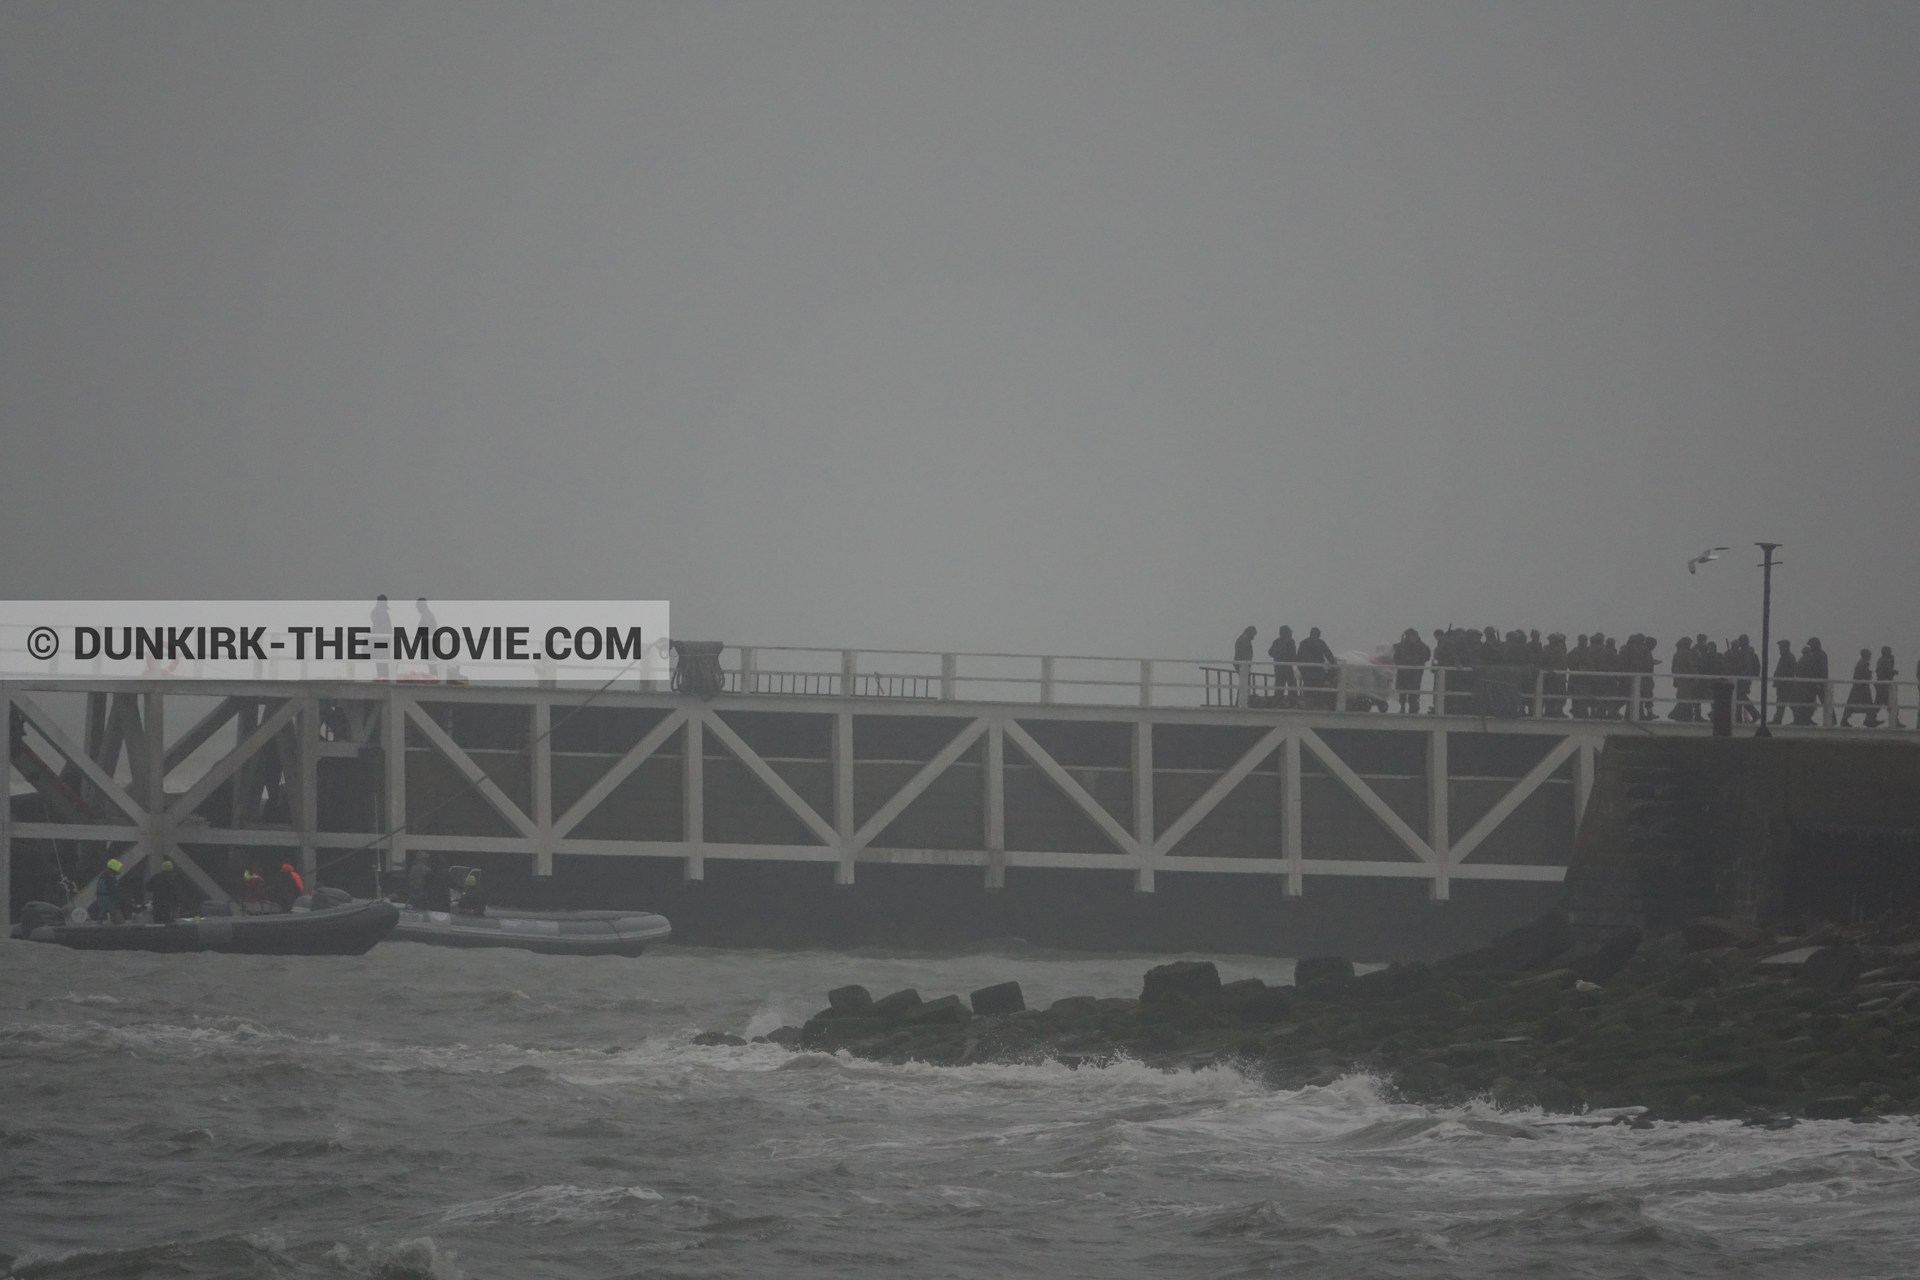 Photo avec ciel gris, figurants, jetée EST, mer agitée,  des dessous du Film Dunkerque de Nolan